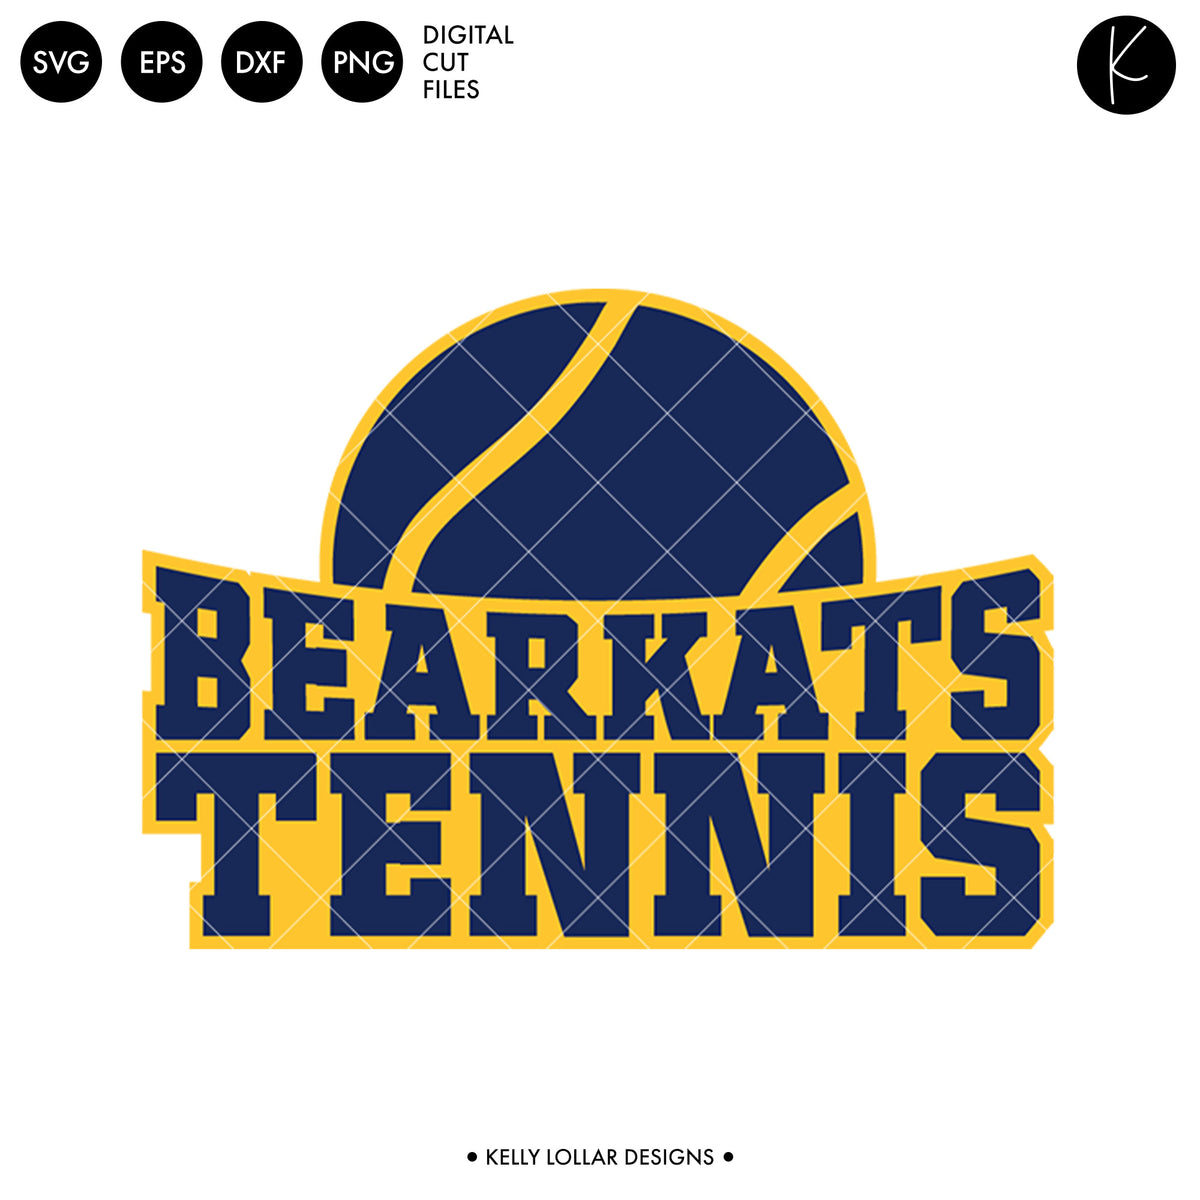 Bearkats Tennis Bundle | SVG DXF EPS PNG Cut Files